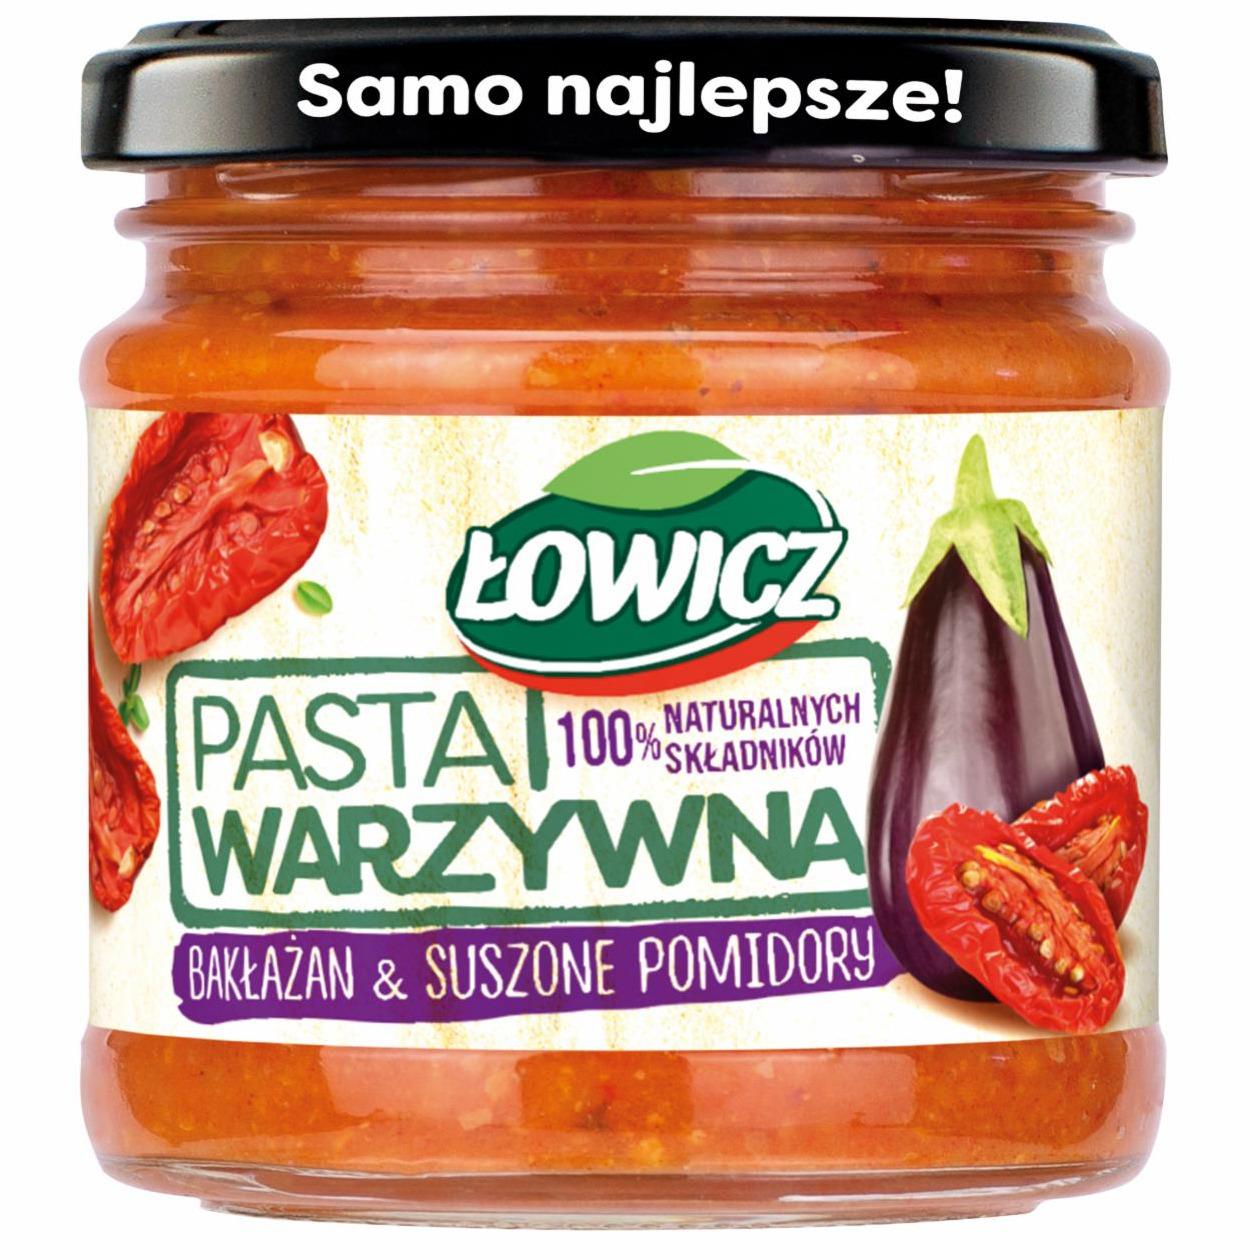 Zdjęcia - Pasta warzywna bakłażan & suszone pomidory Łowicz